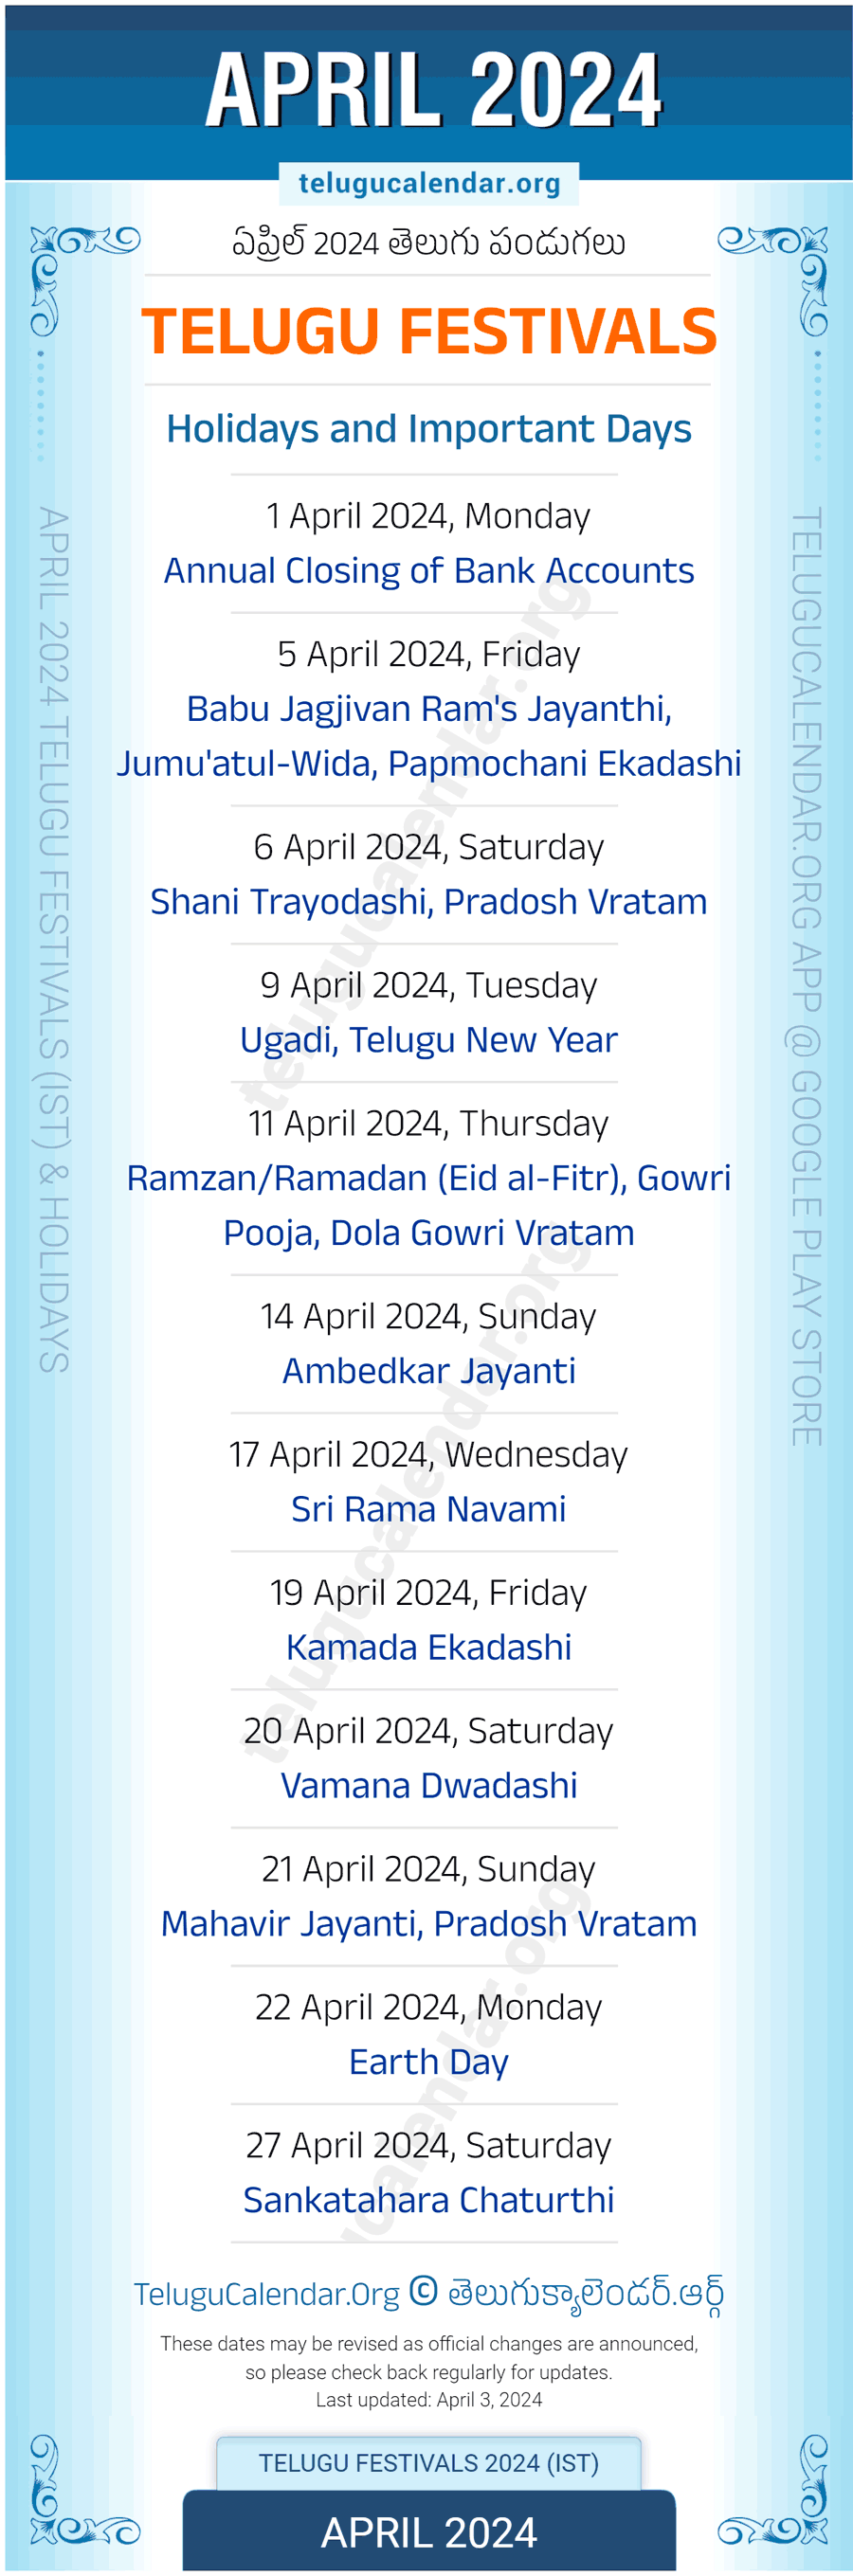 Telugu Festivals 2024 April